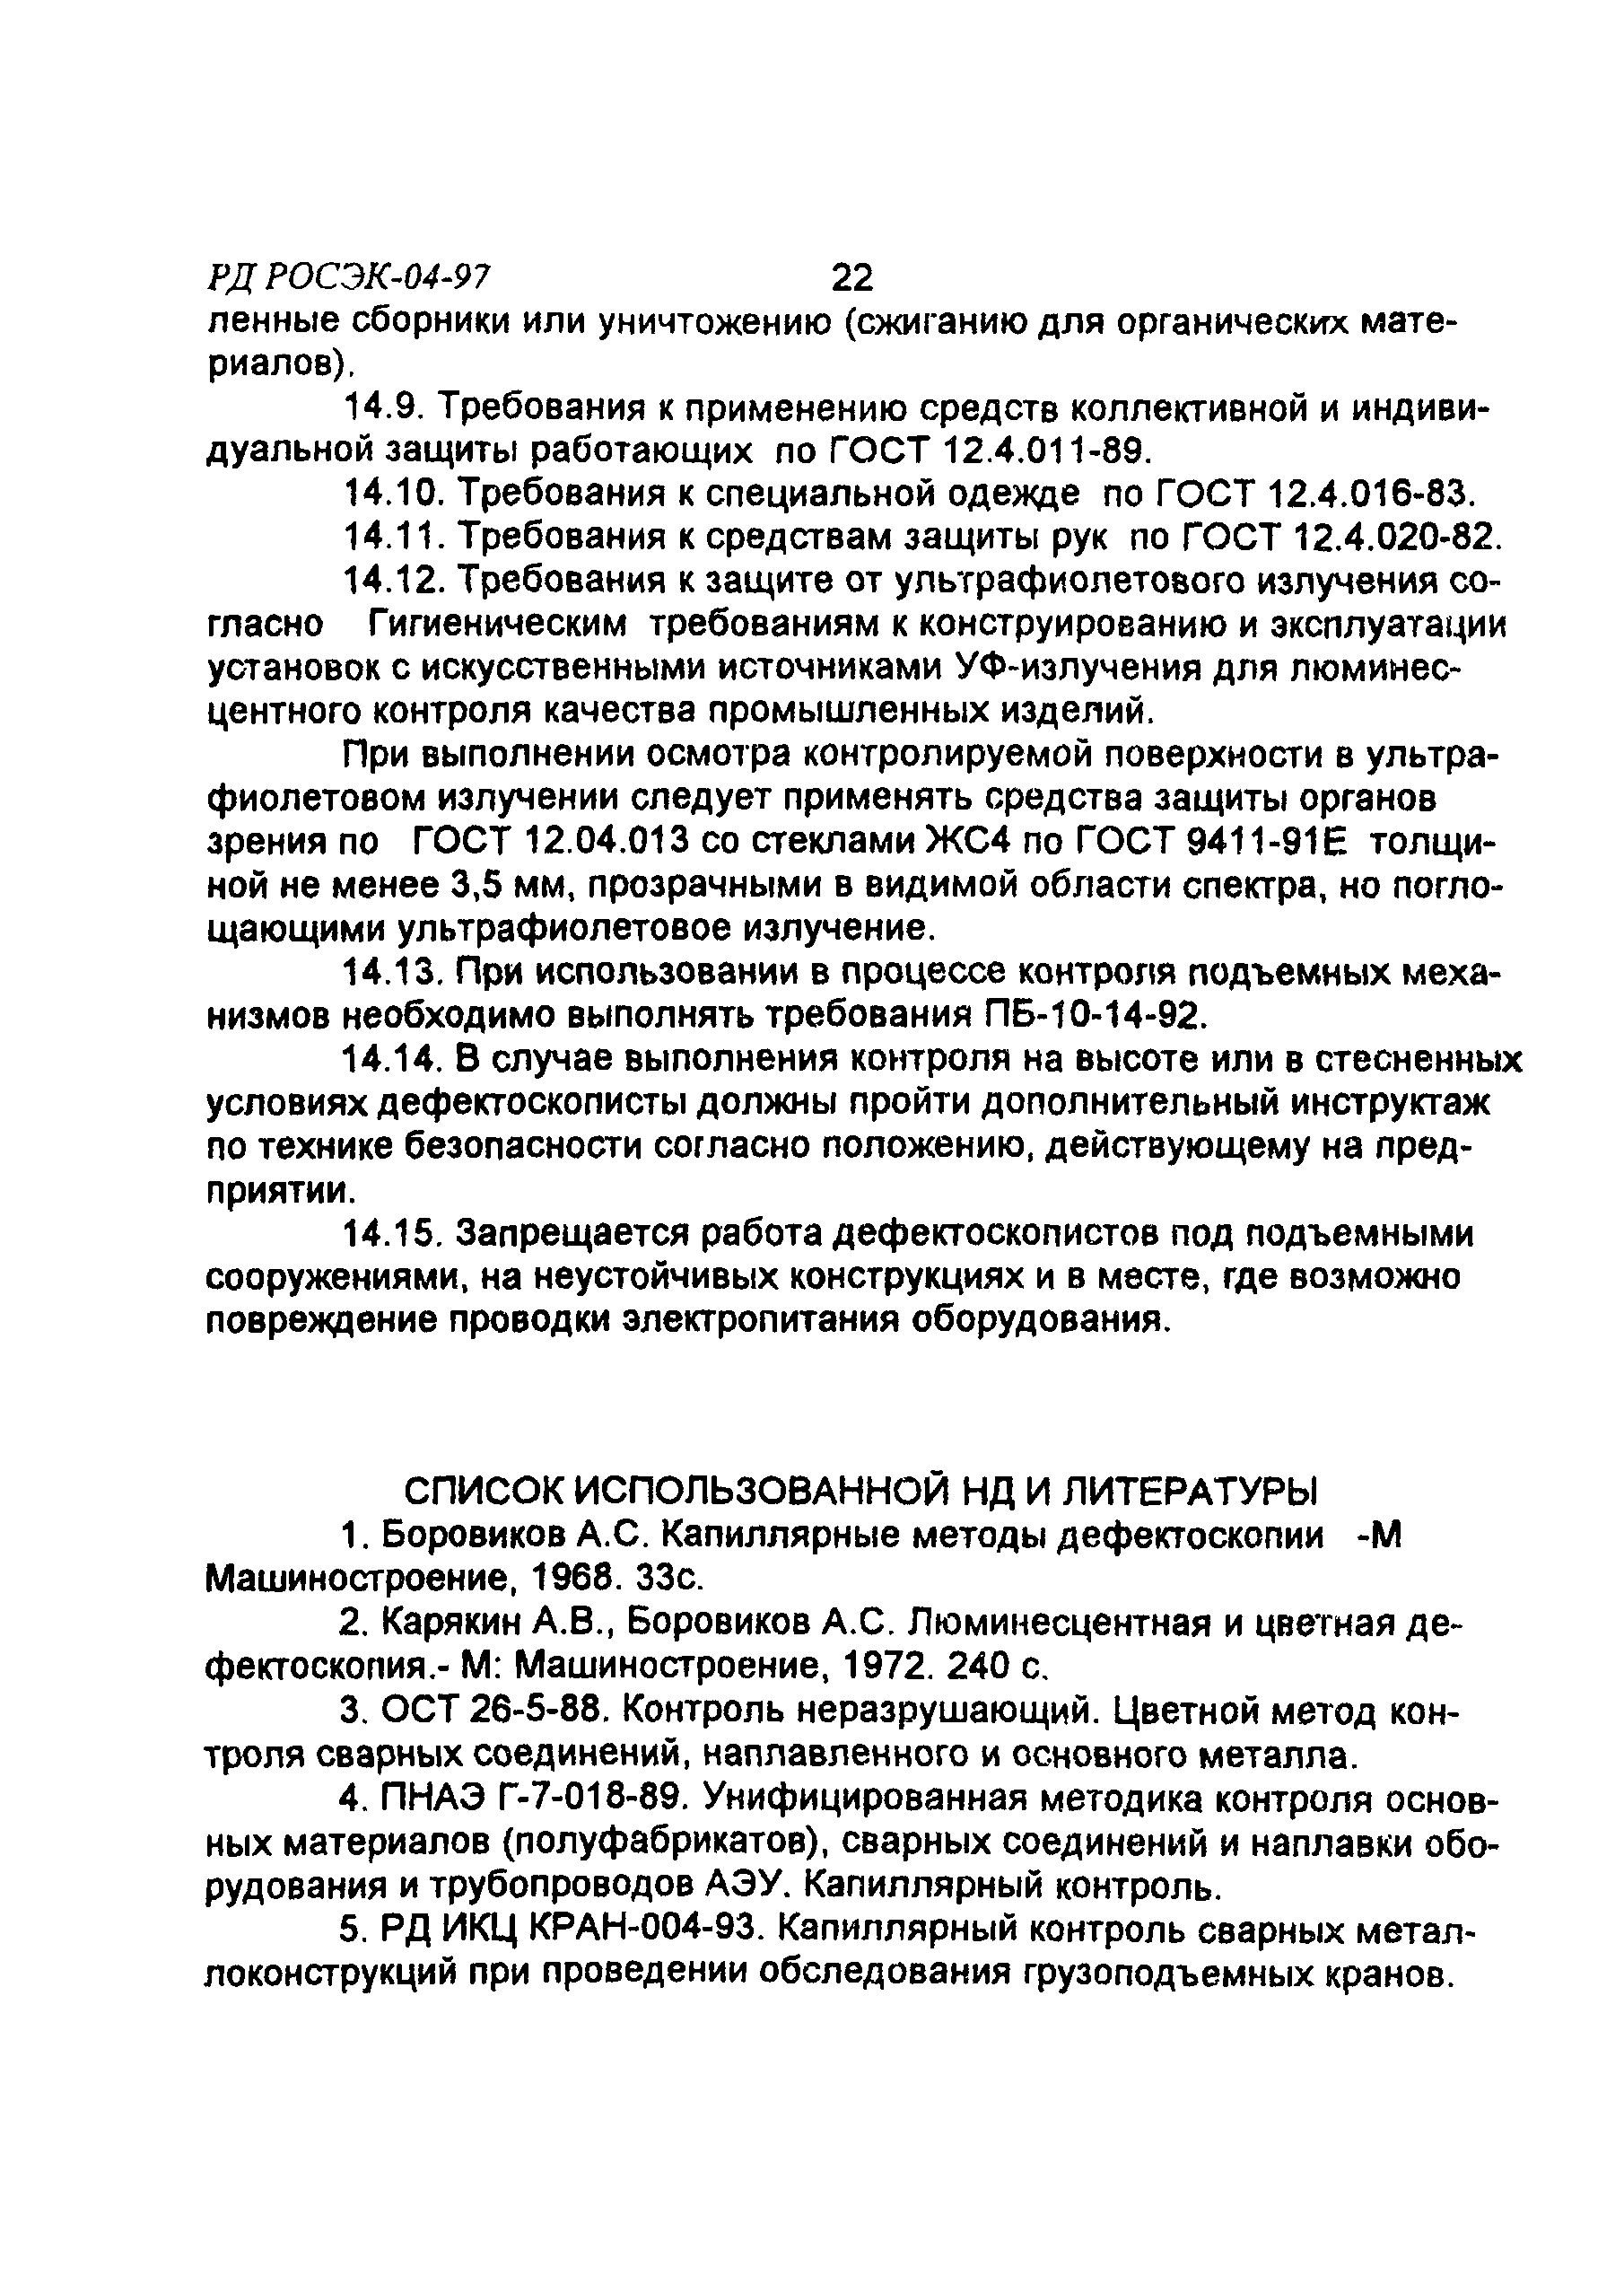 РД РосЭК 004-97